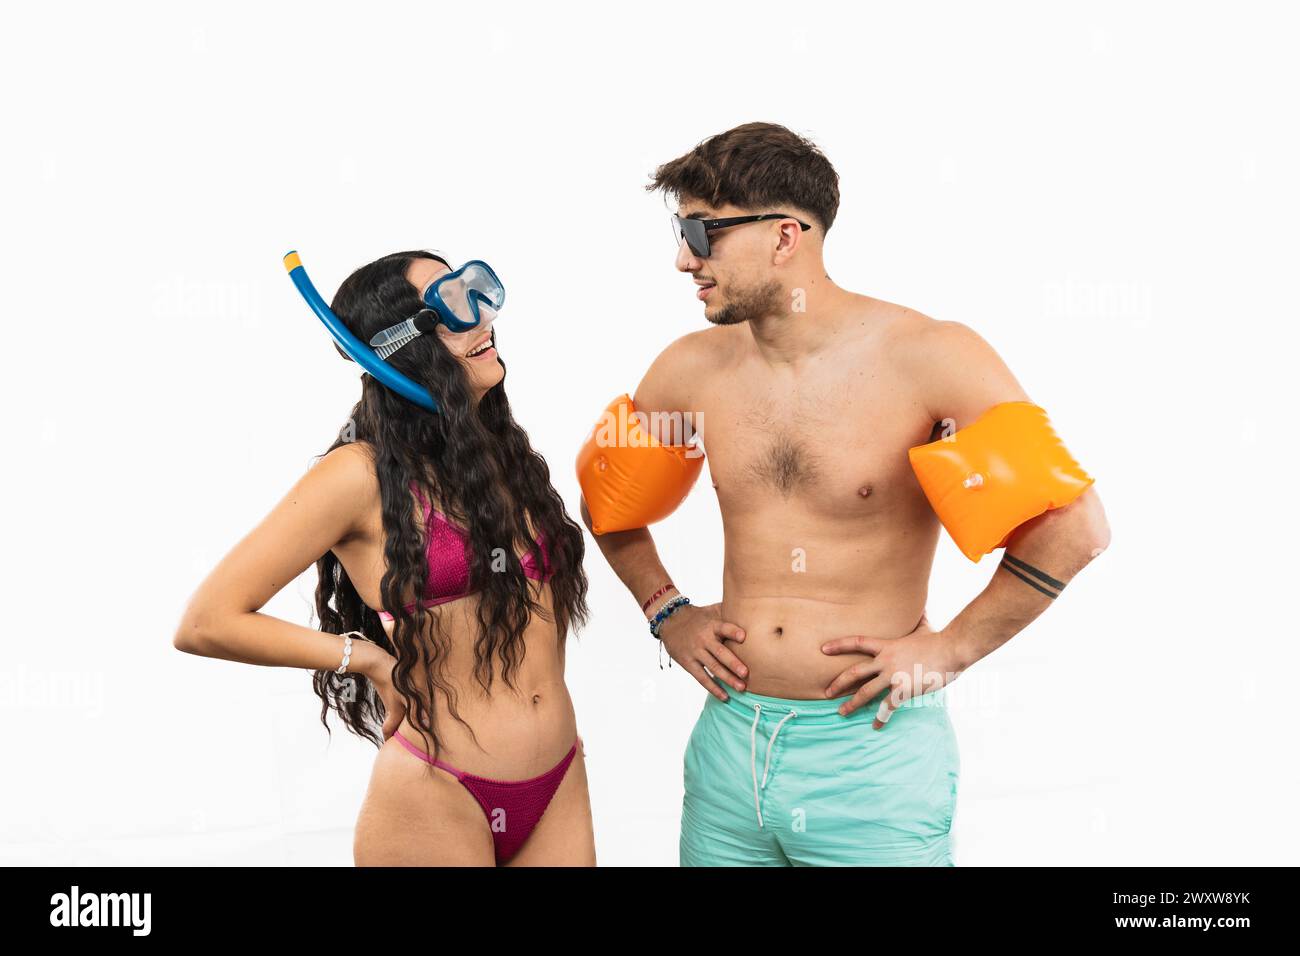 Abenteuerlustiges multikulturelles Paar ist auf einen Tag am Strand vorbereitet. Die Latina trägt einen Bikini und Schnorchelausrüstung, während der Mann Badehosen trägt Stockfoto